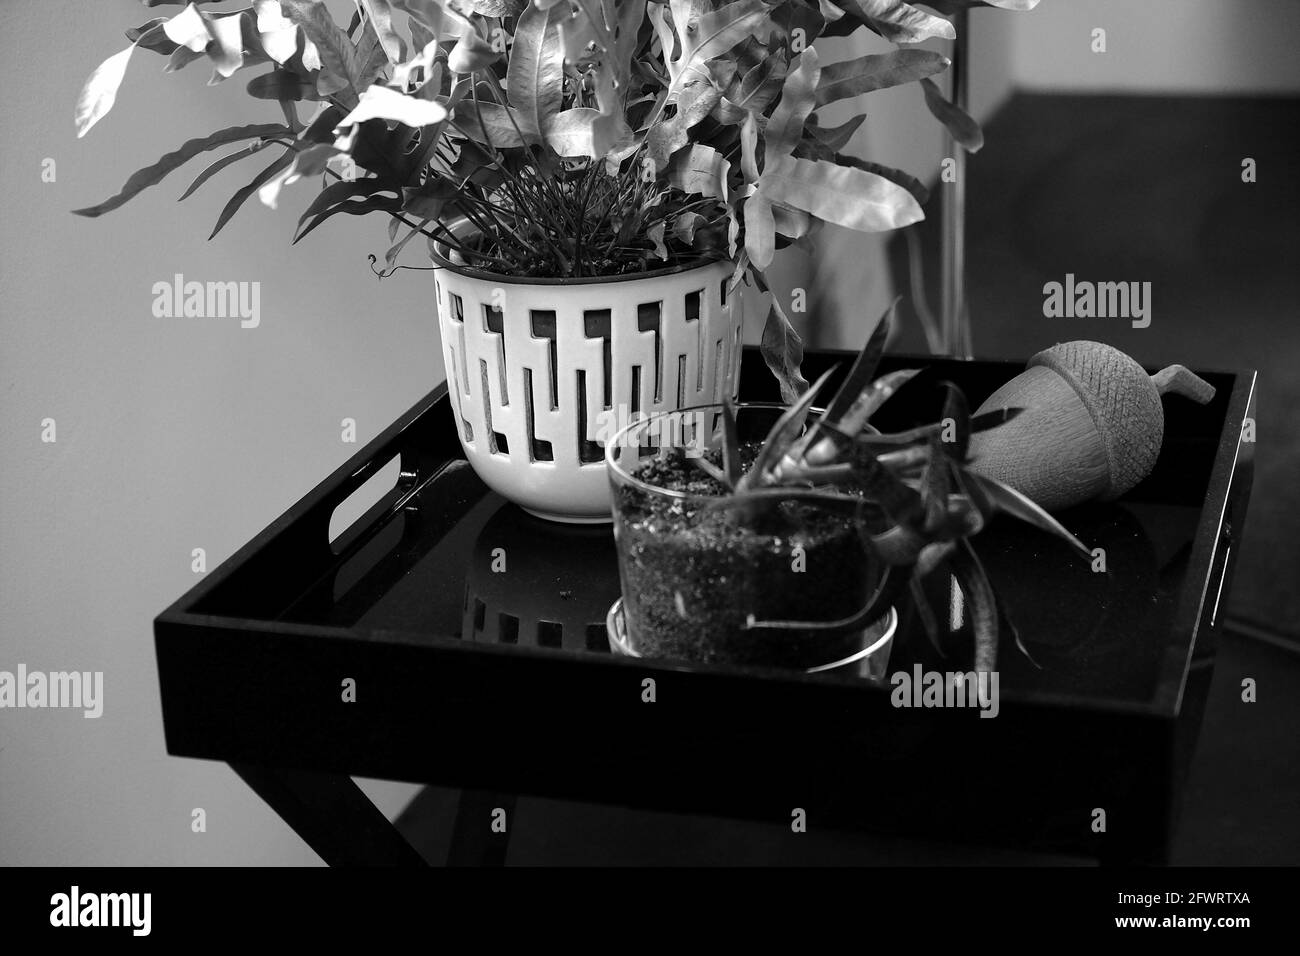 Prise de vue en niveaux de gris de plantes en pot à l'intérieur Banque D'Images